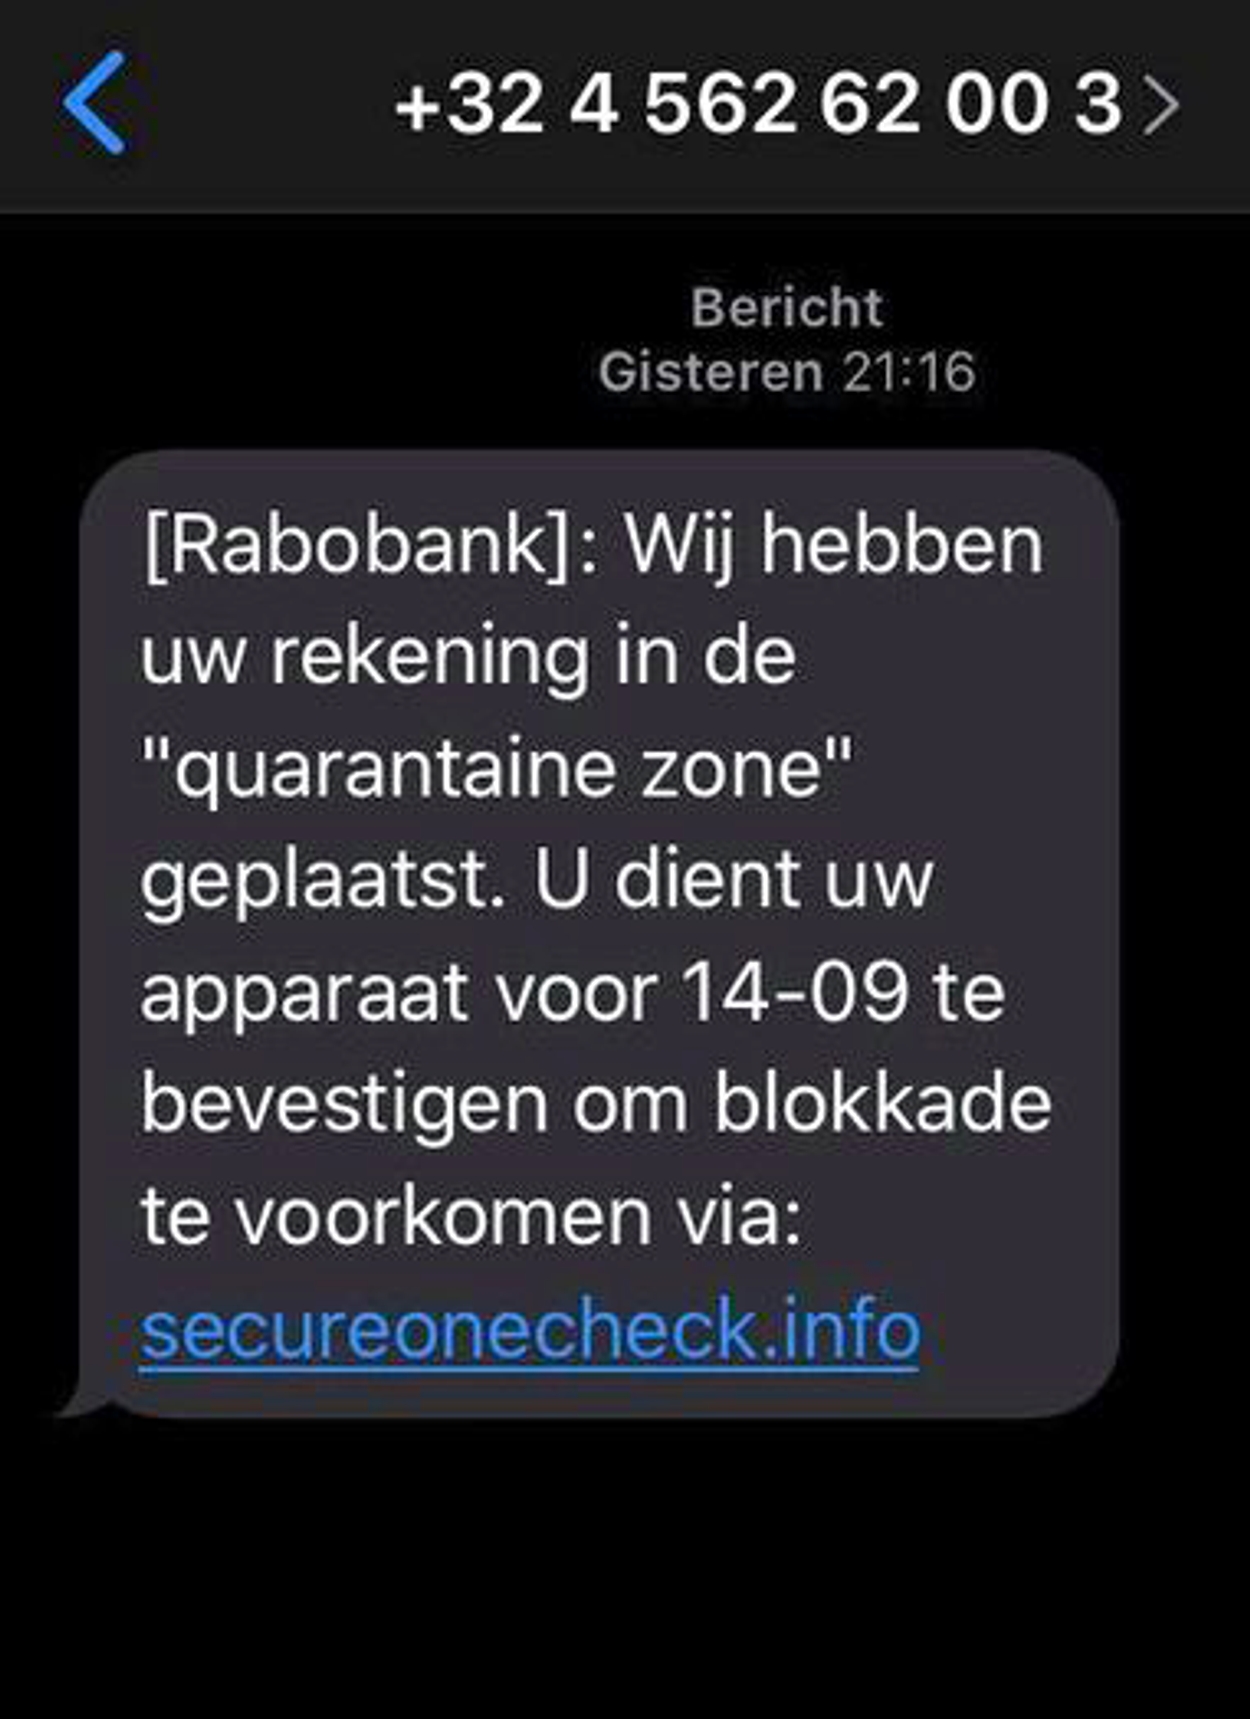 sms phishing rabobank